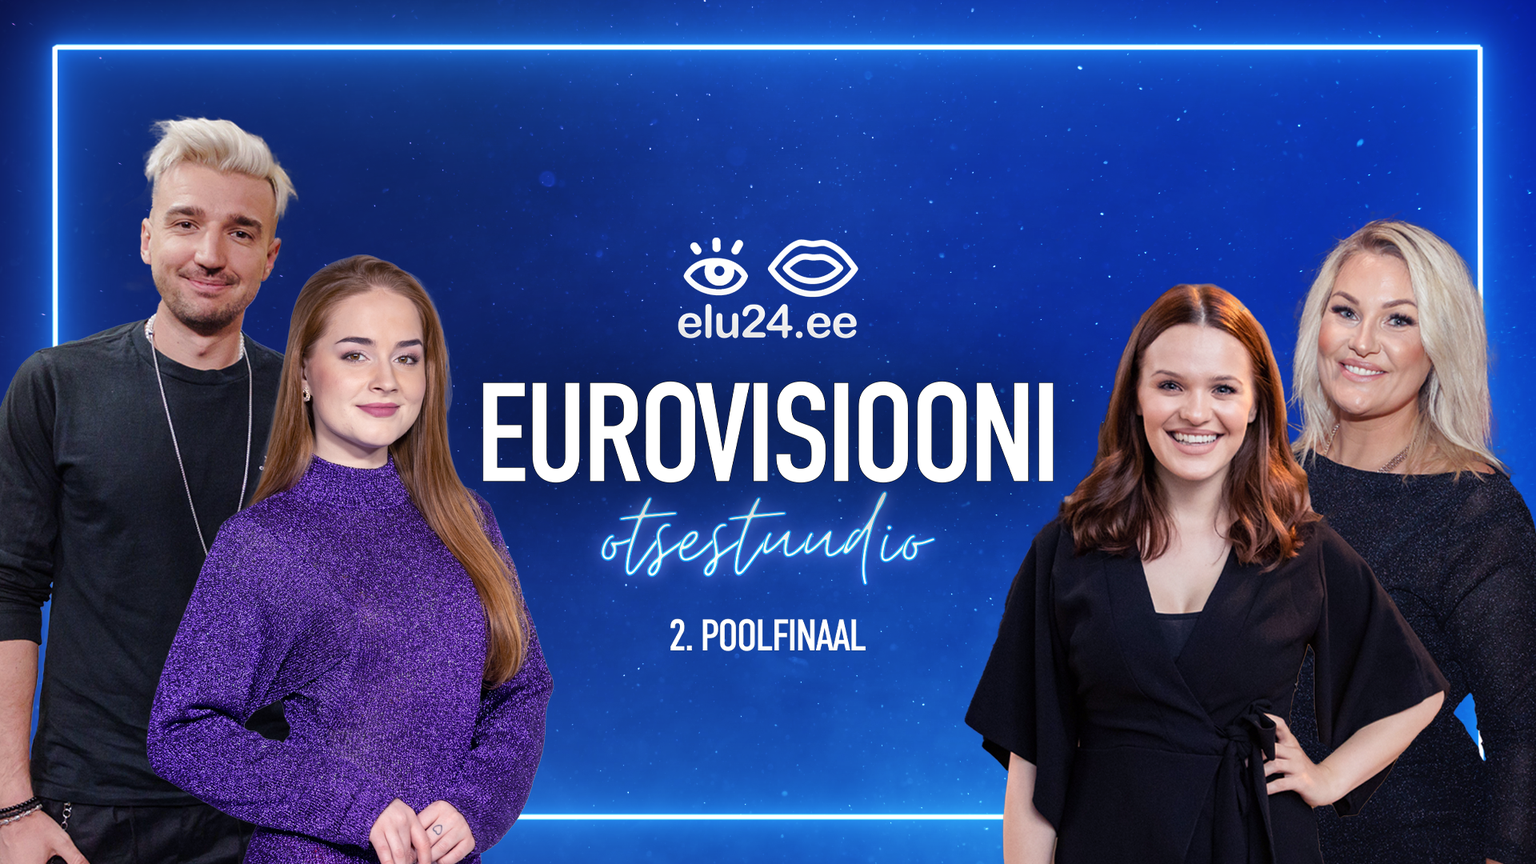 Elu24 Eurovisiooni otsestuudio 11. mail kell 22.00